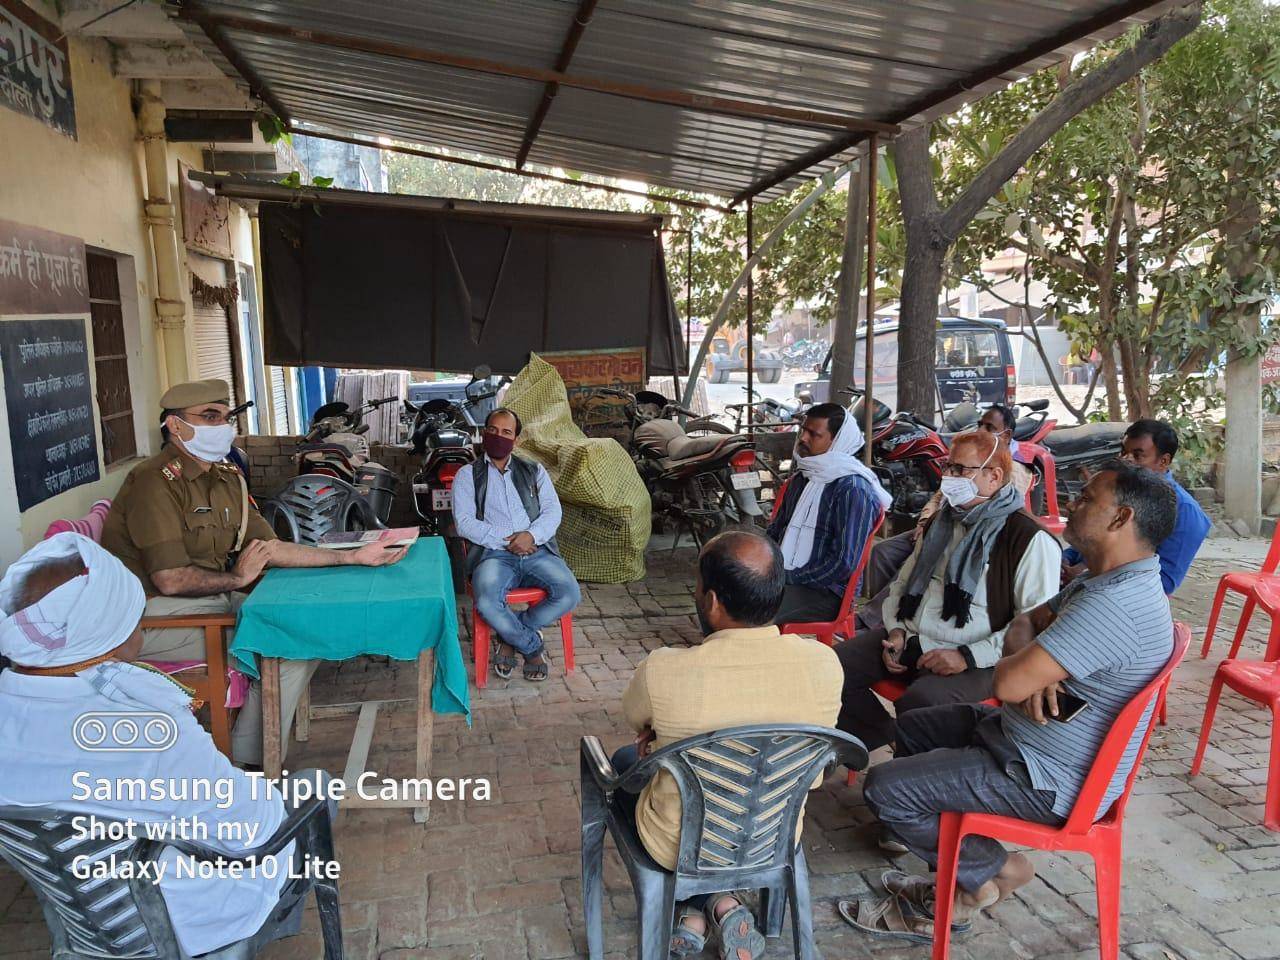 कमालपुर चौकी पर शांति समिति की बैठक, त्योहार में खलल डालने वालों को चेतावनी